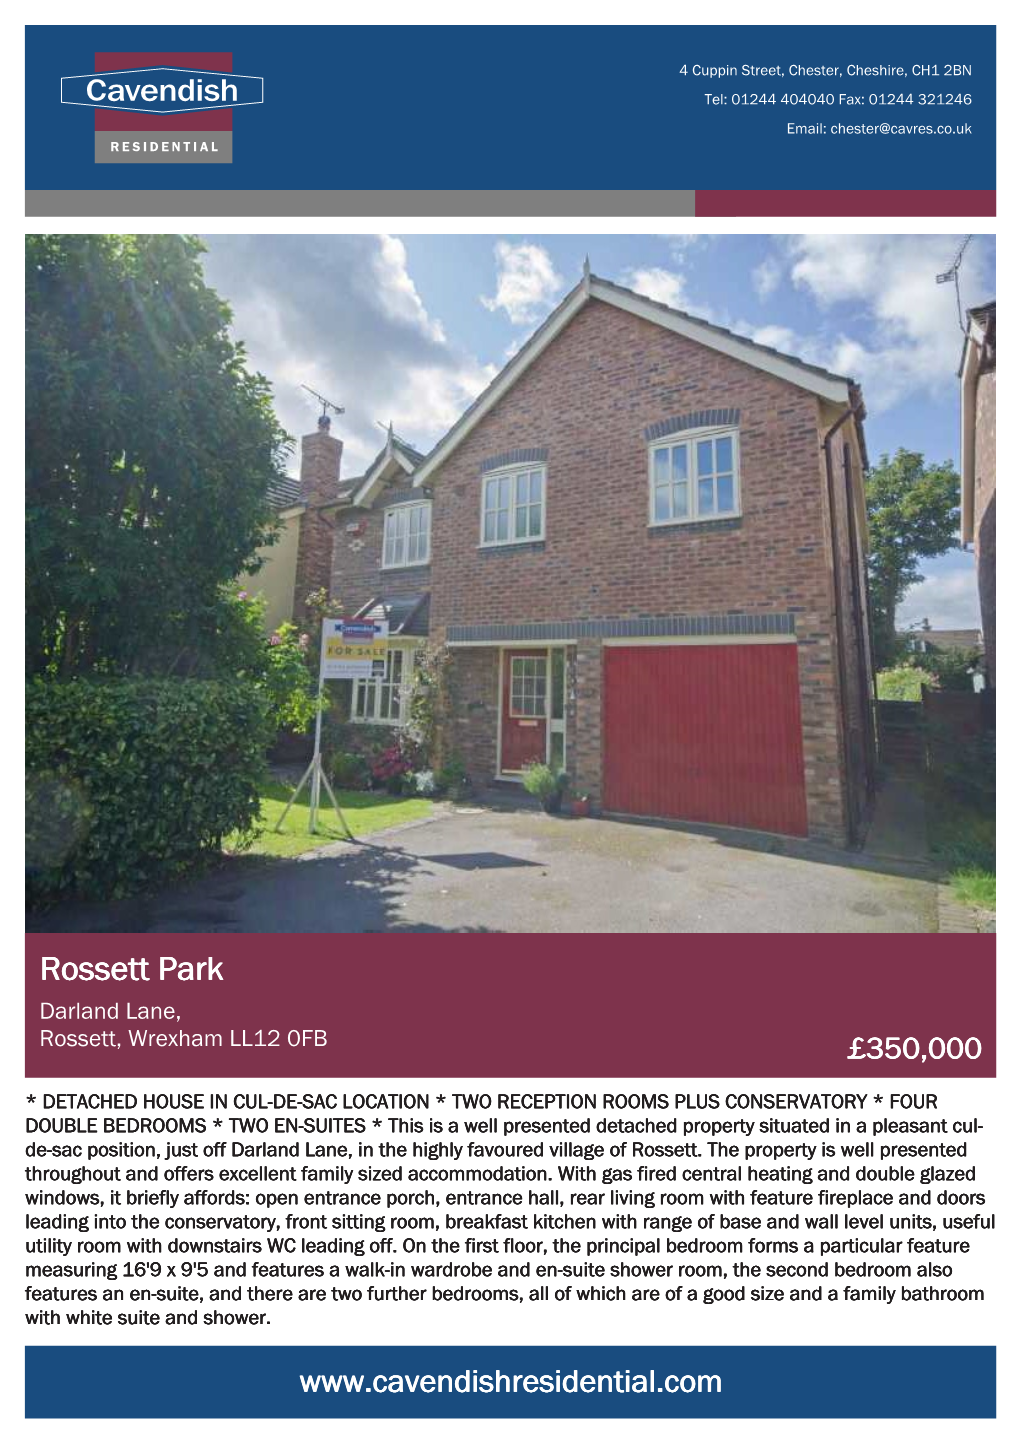 Rossett Park Darland Lane, Rossett, Wrexham LL12 0FB £350,000